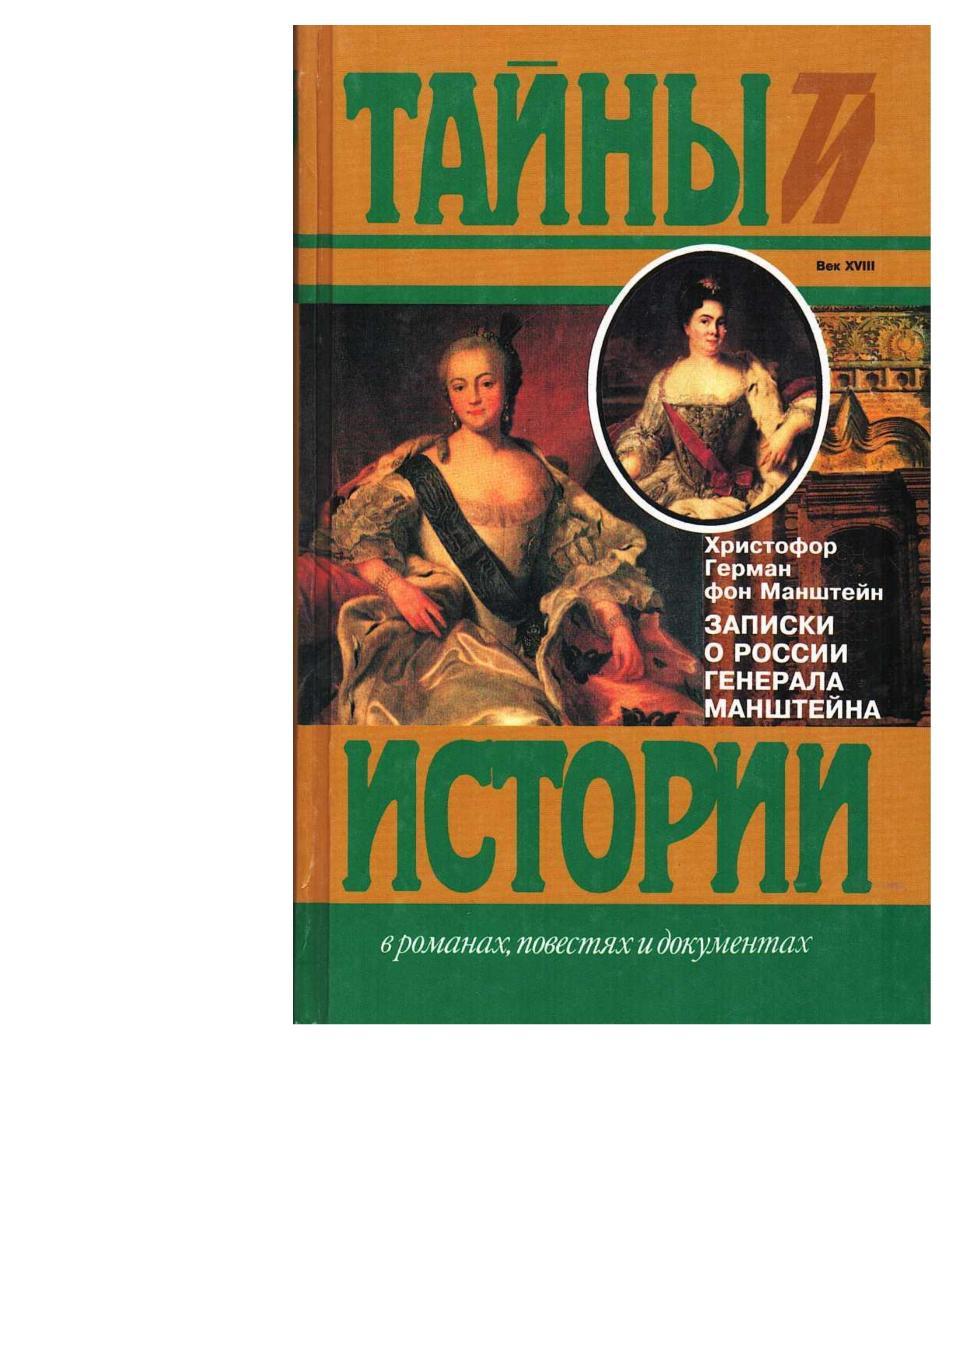 Манштейн Х.Г. Записки о России генерала Манштейна. – М., 1998.